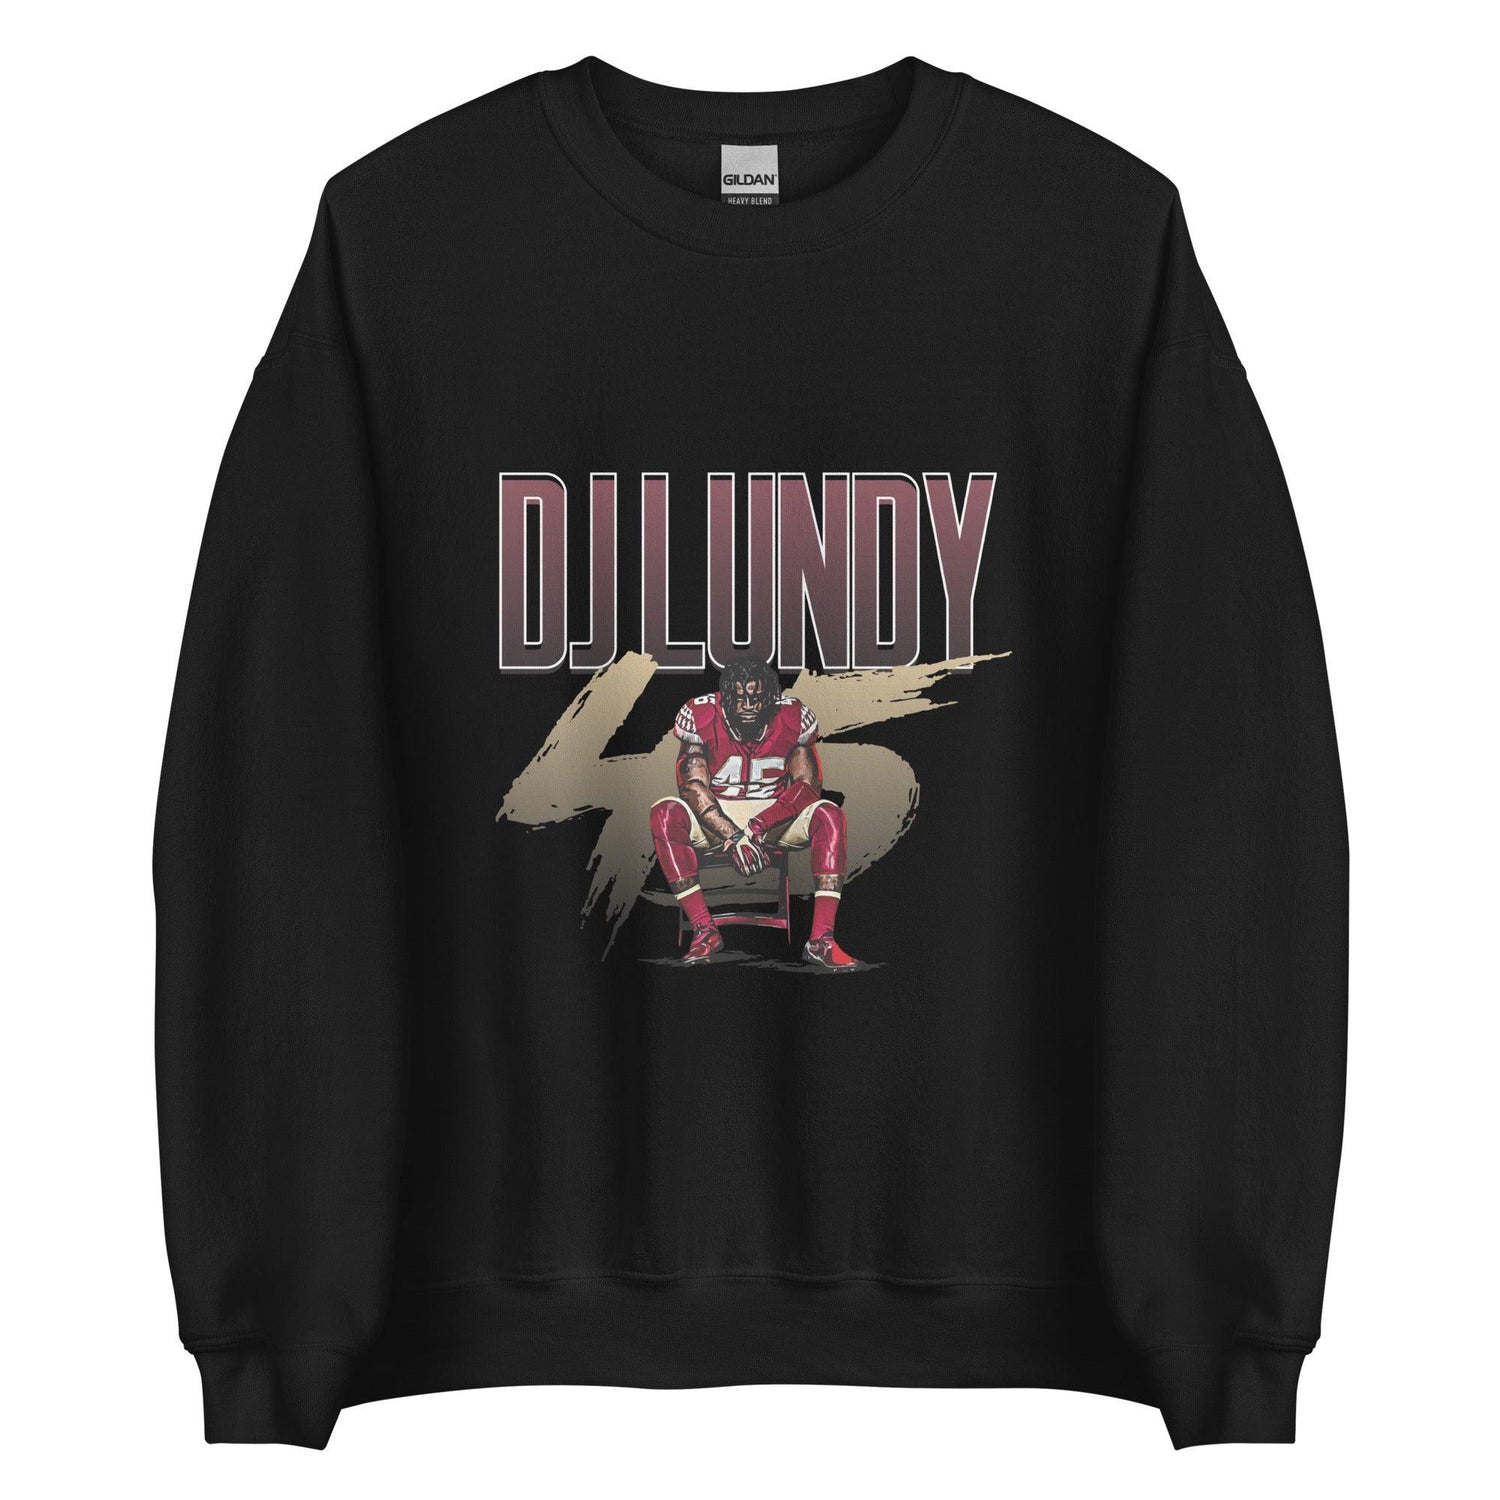 DJ Lundy "Gameday" Sweatshirt - Fan Arch